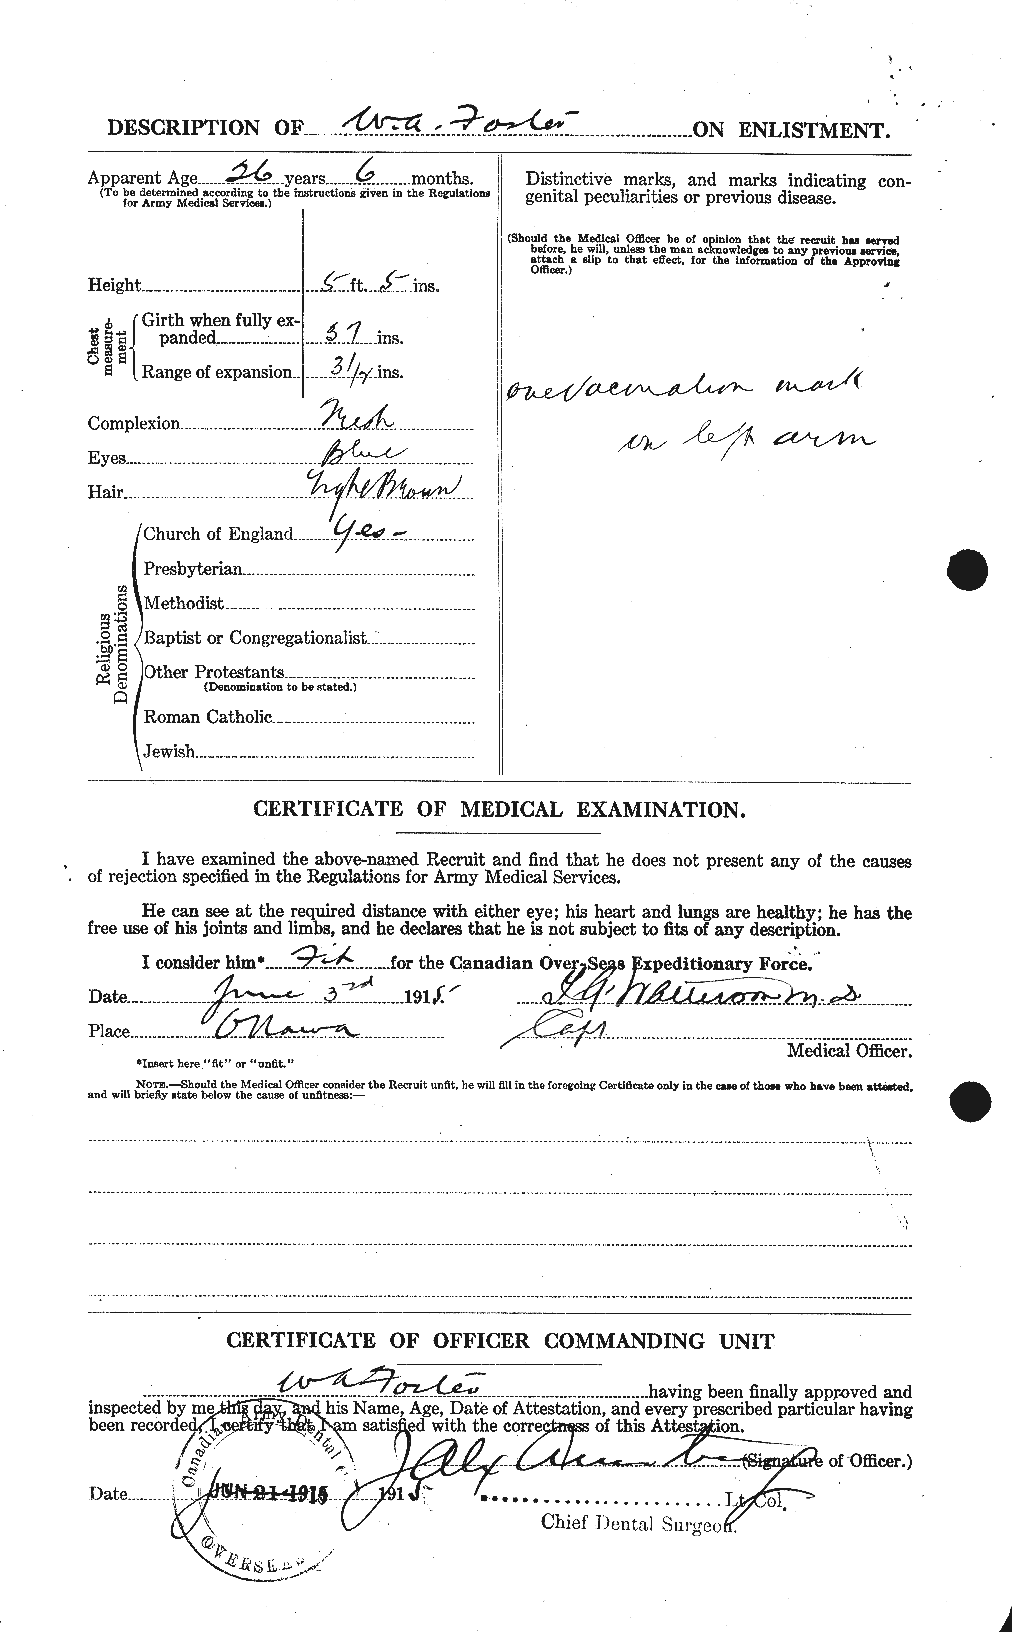 Dossiers du Personnel de la Première Guerre mondiale - CEC 328724b